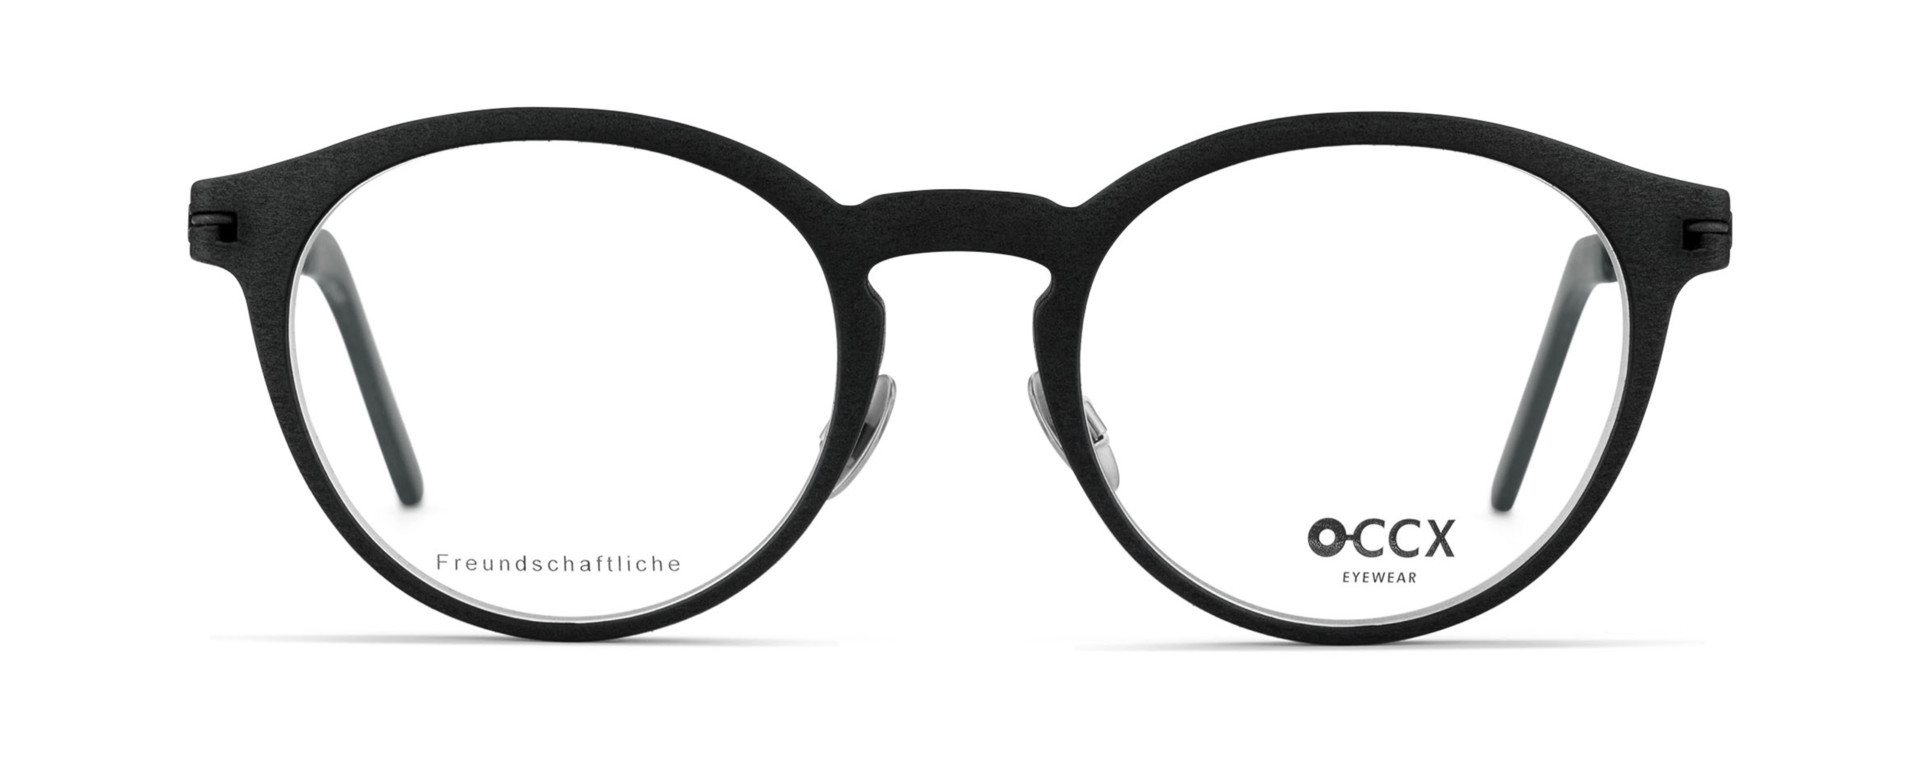 O-CCX Eyewear Avantgarde Freundschaftliche Schieferschwarz